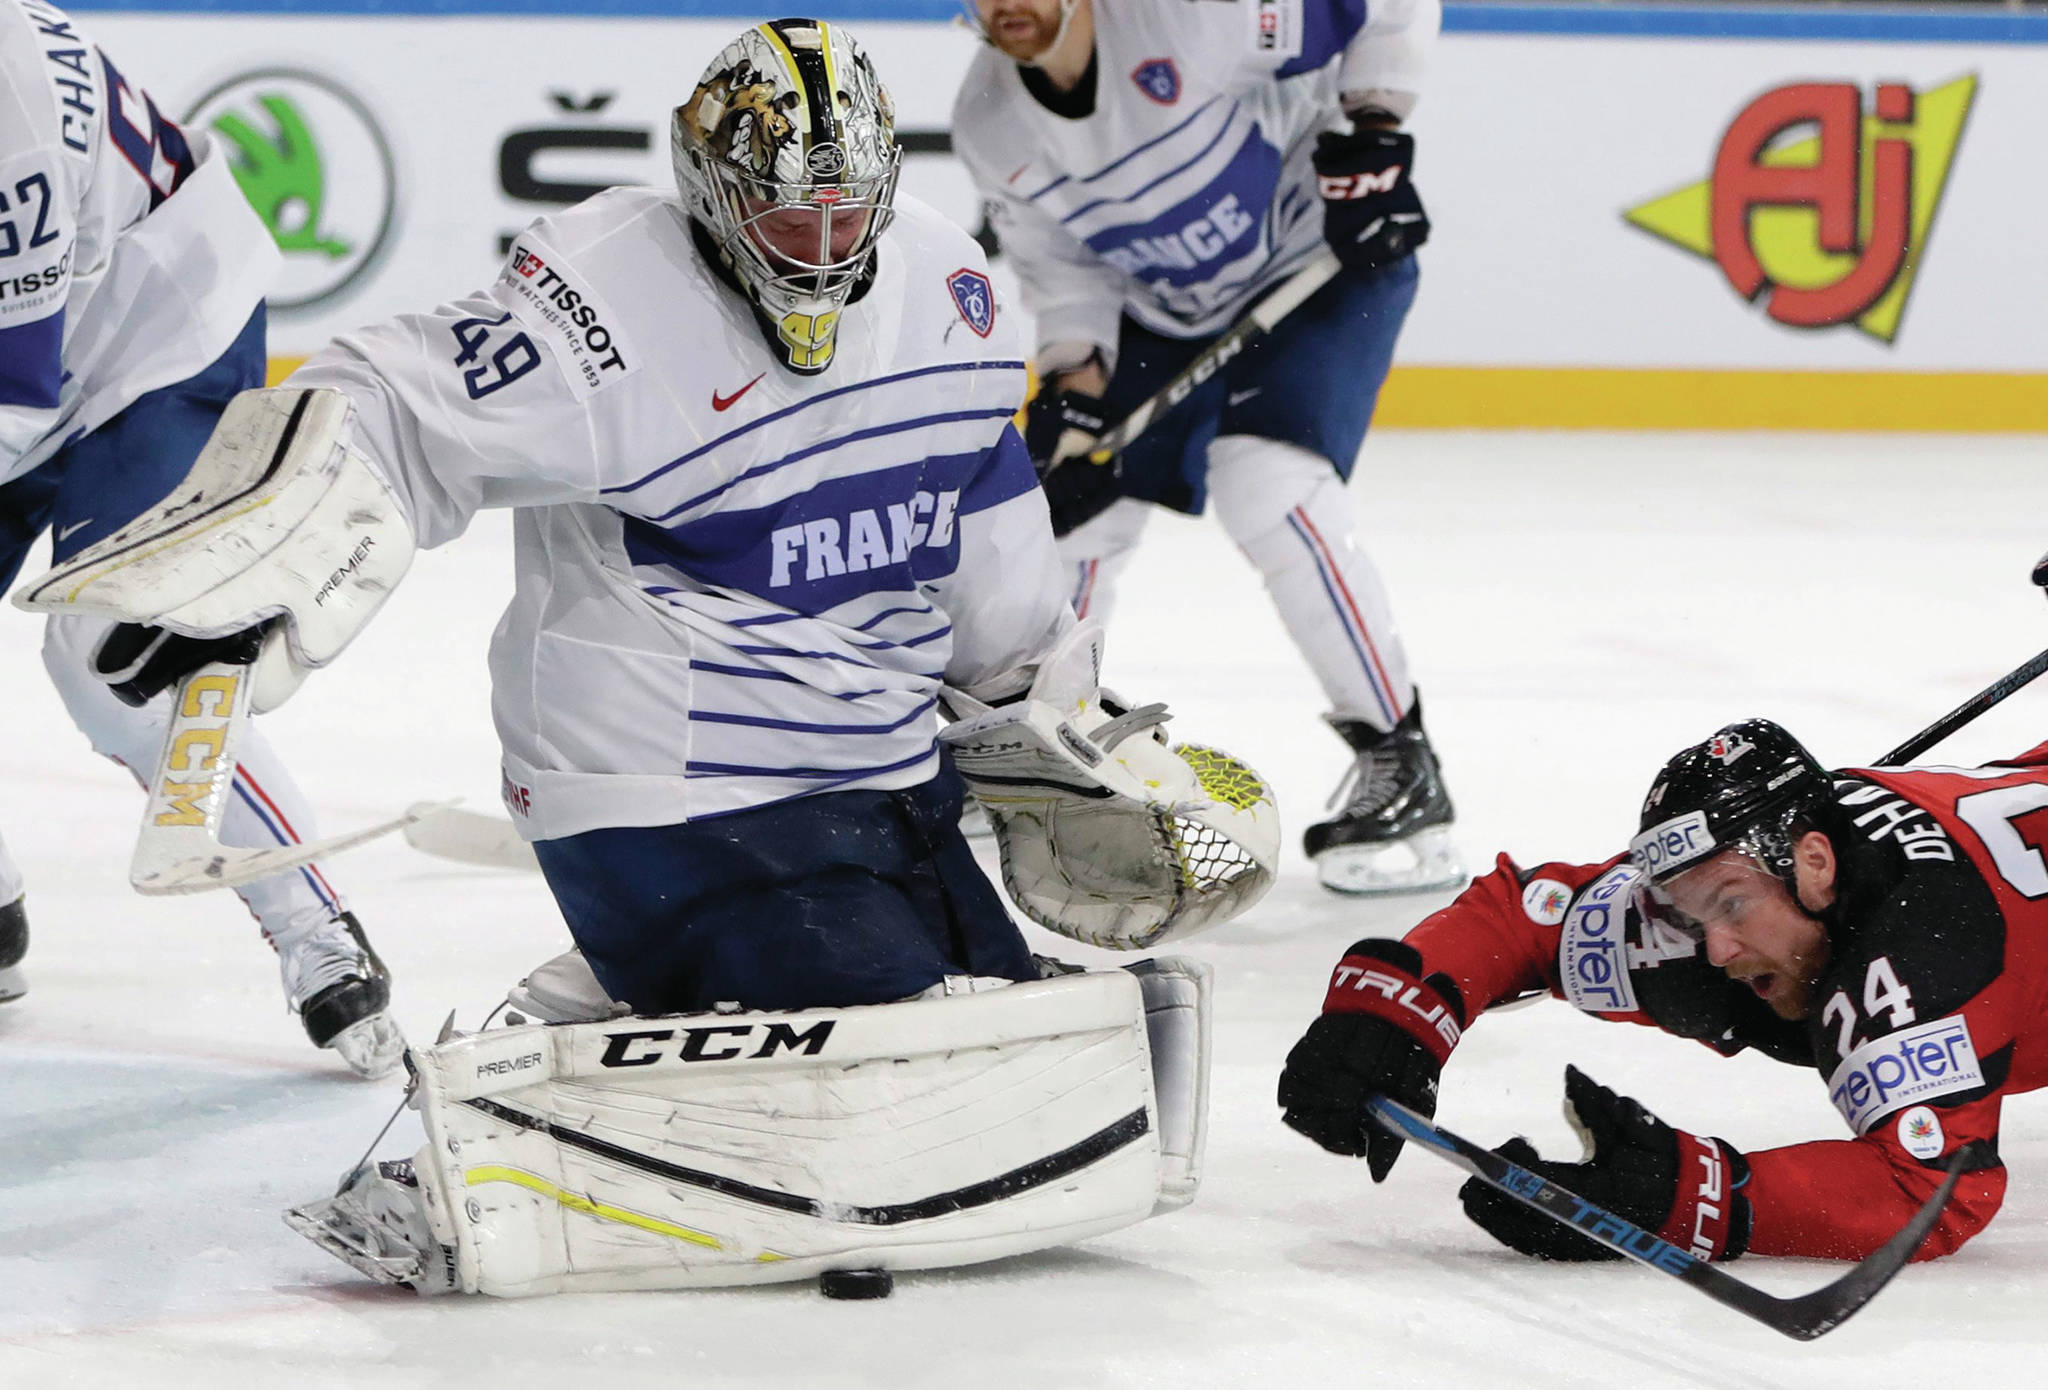 web1_170512-RDA-Sports-World-hockey-Canada-France